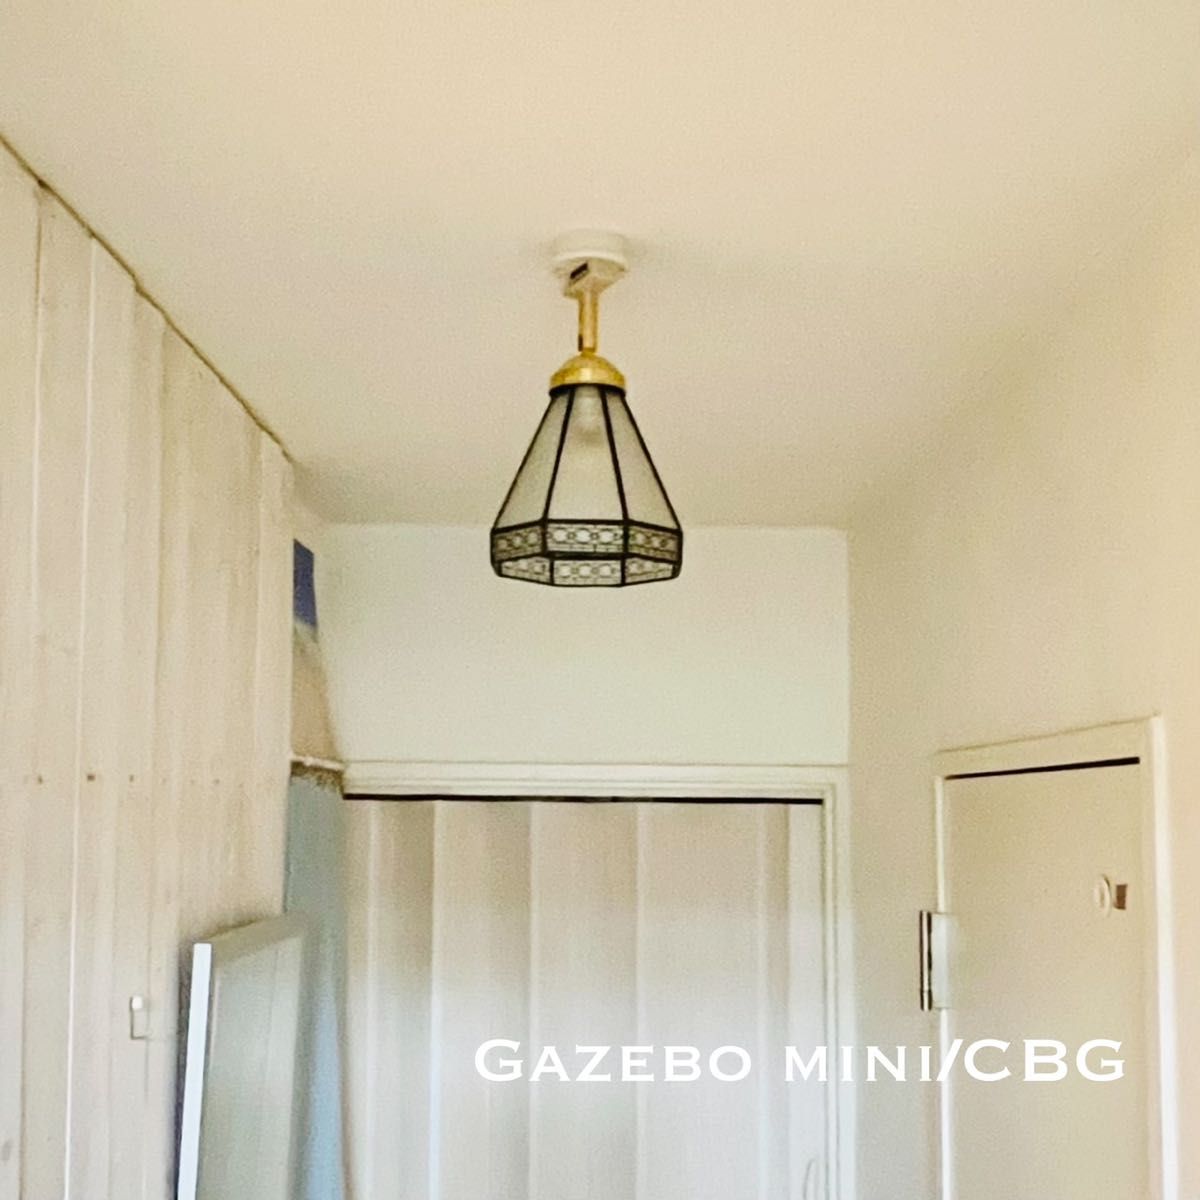 天井照明 Gazebo-m/C シーリングライト ステンドグラス ランプシェード E17ソケット 簡単取付 LED照明 インテリア